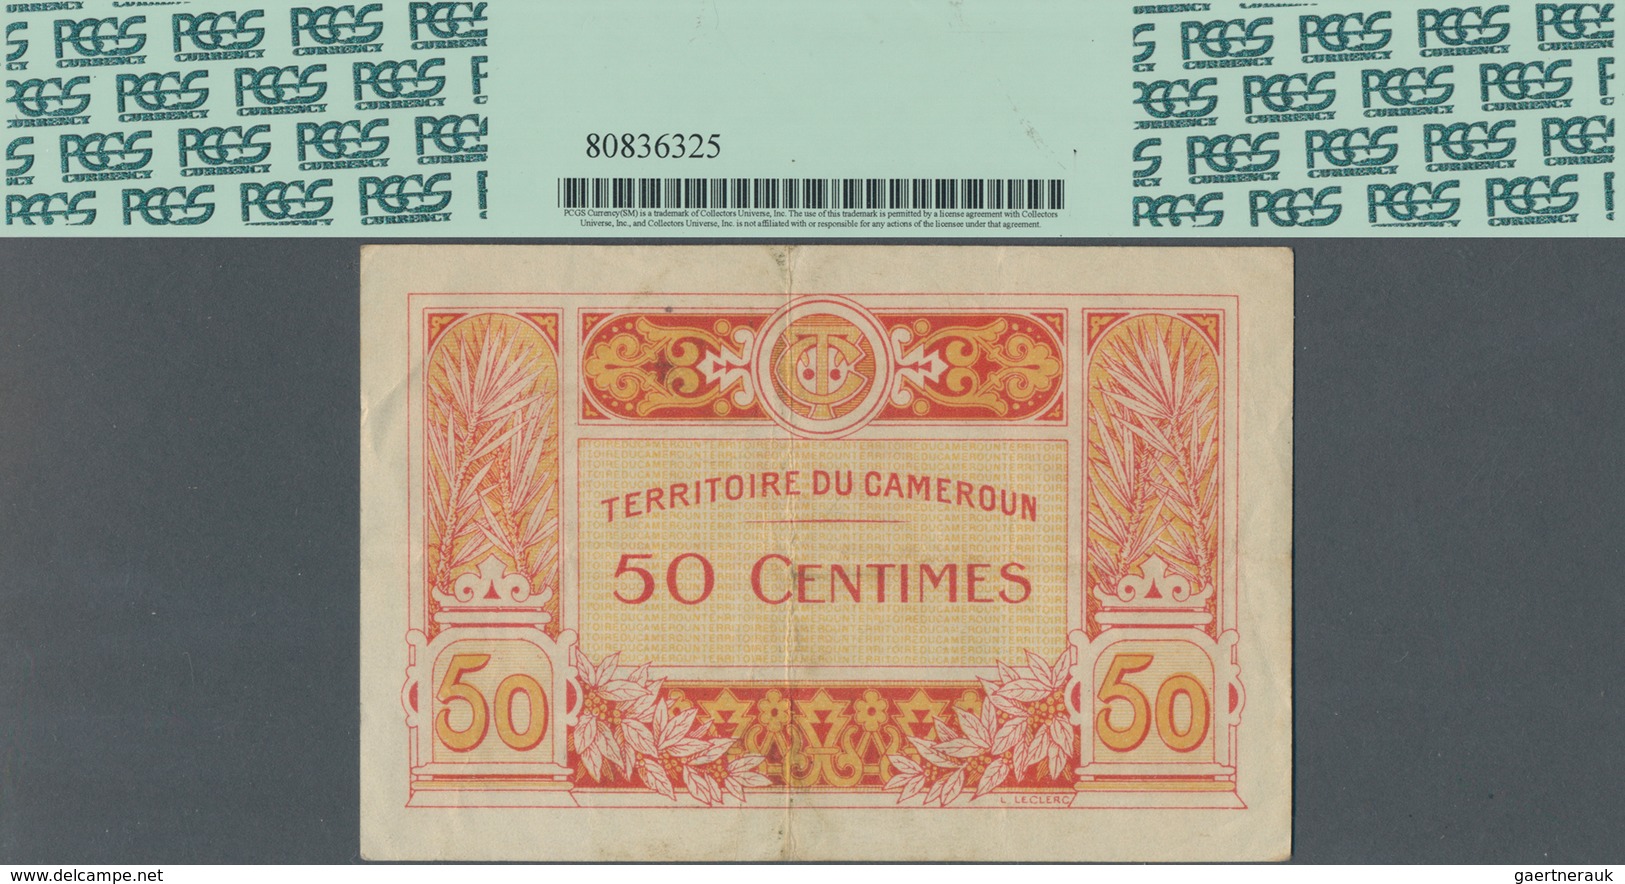 Cameroon / Kamerun: Territoire Du Cameroun - Commissaire De La République 50 Centimes ND(1922), P.4, - Cameroon